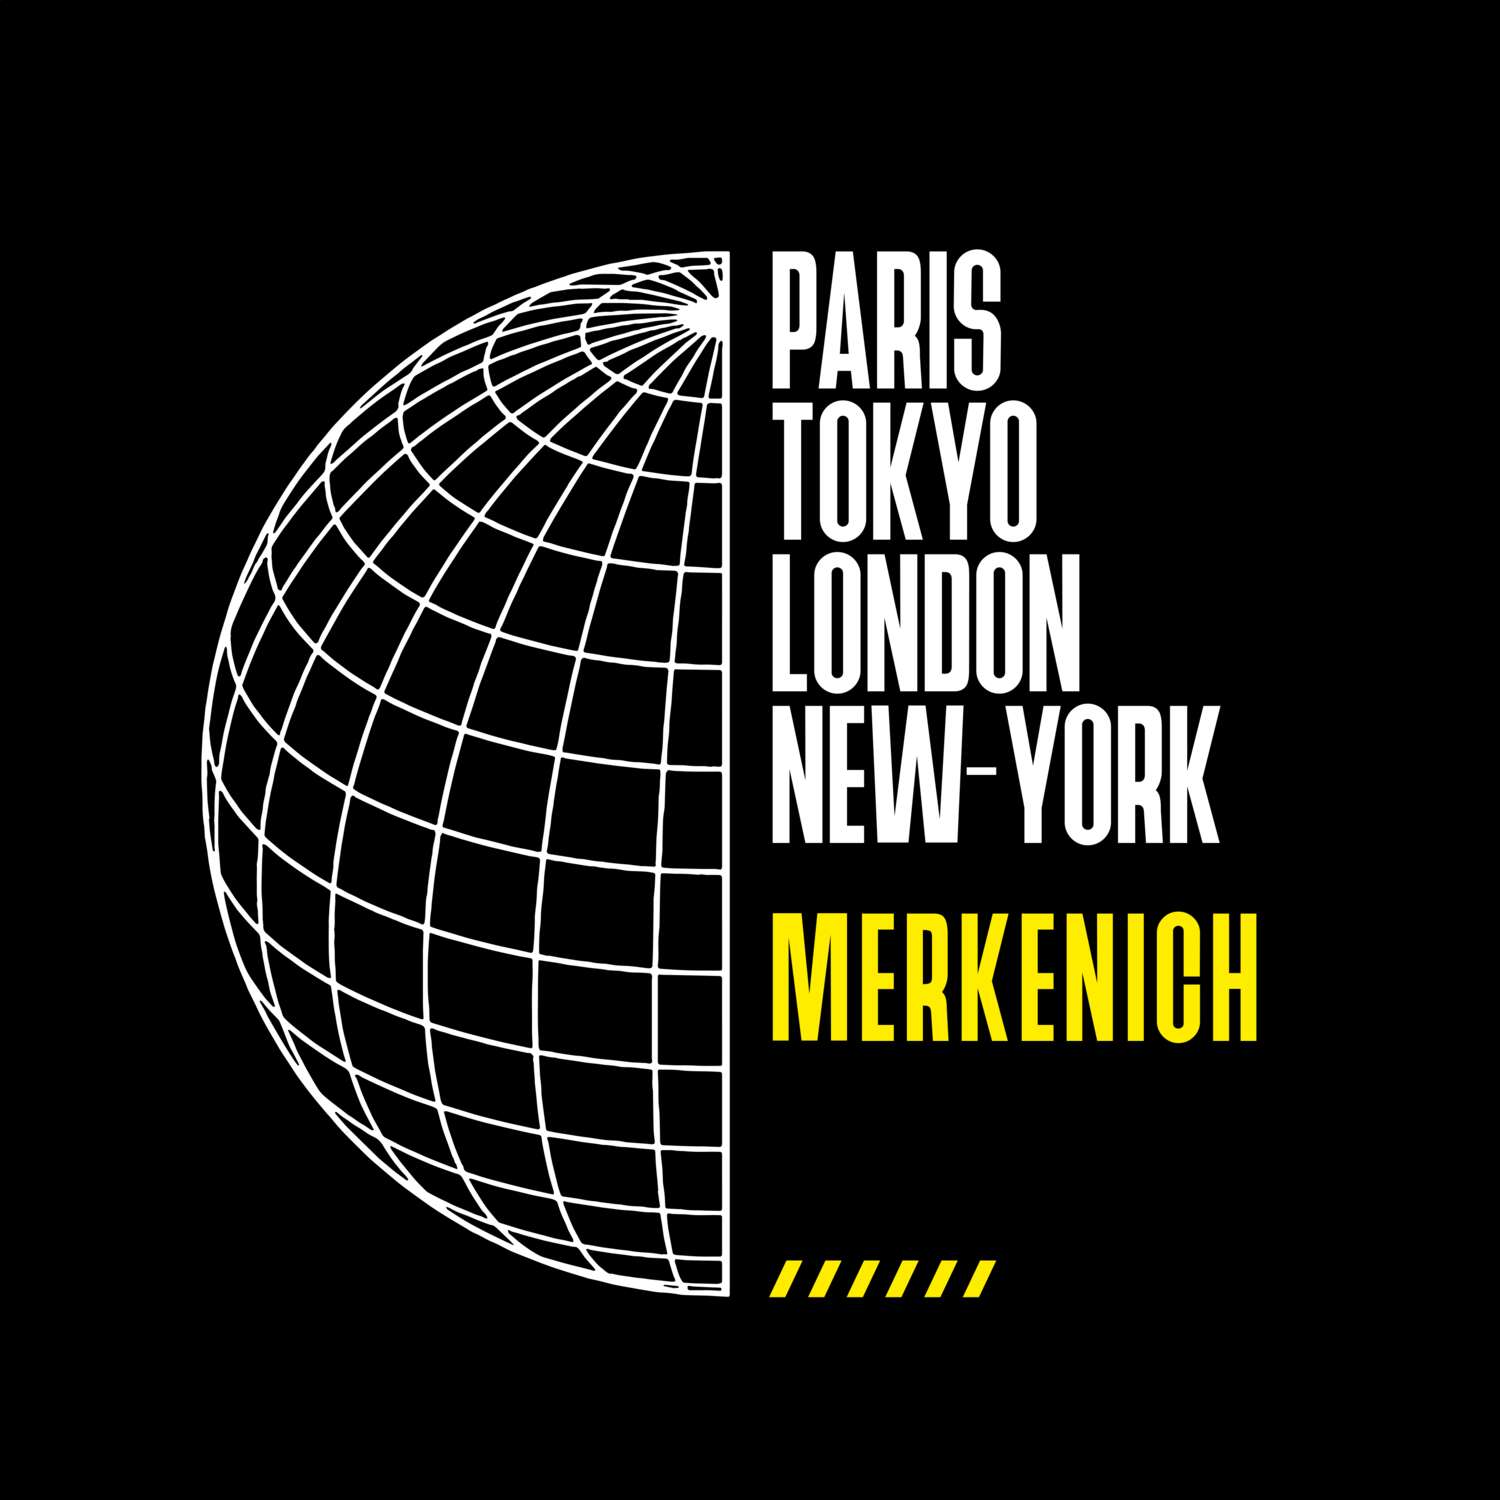 Merkenich T-Shirt »Paris Tokyo London«